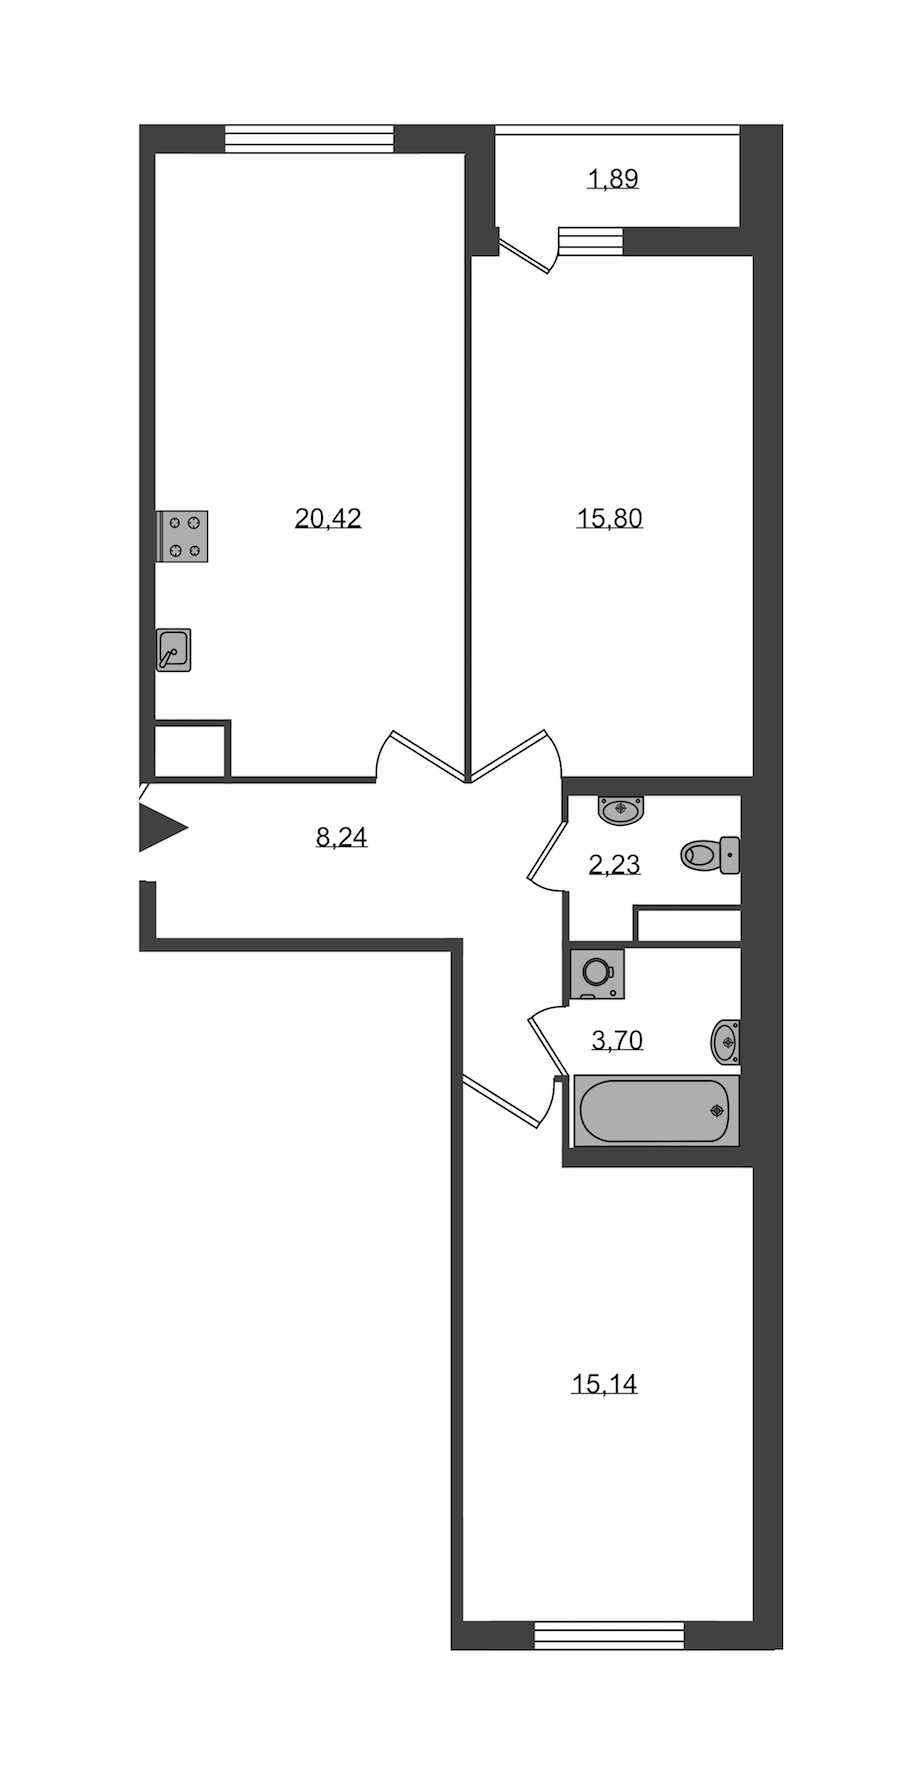 Двухкомнатная квартира в KVS: площадь 65.53 м2 , этаж: 1 – купить в Санкт-Петербурге